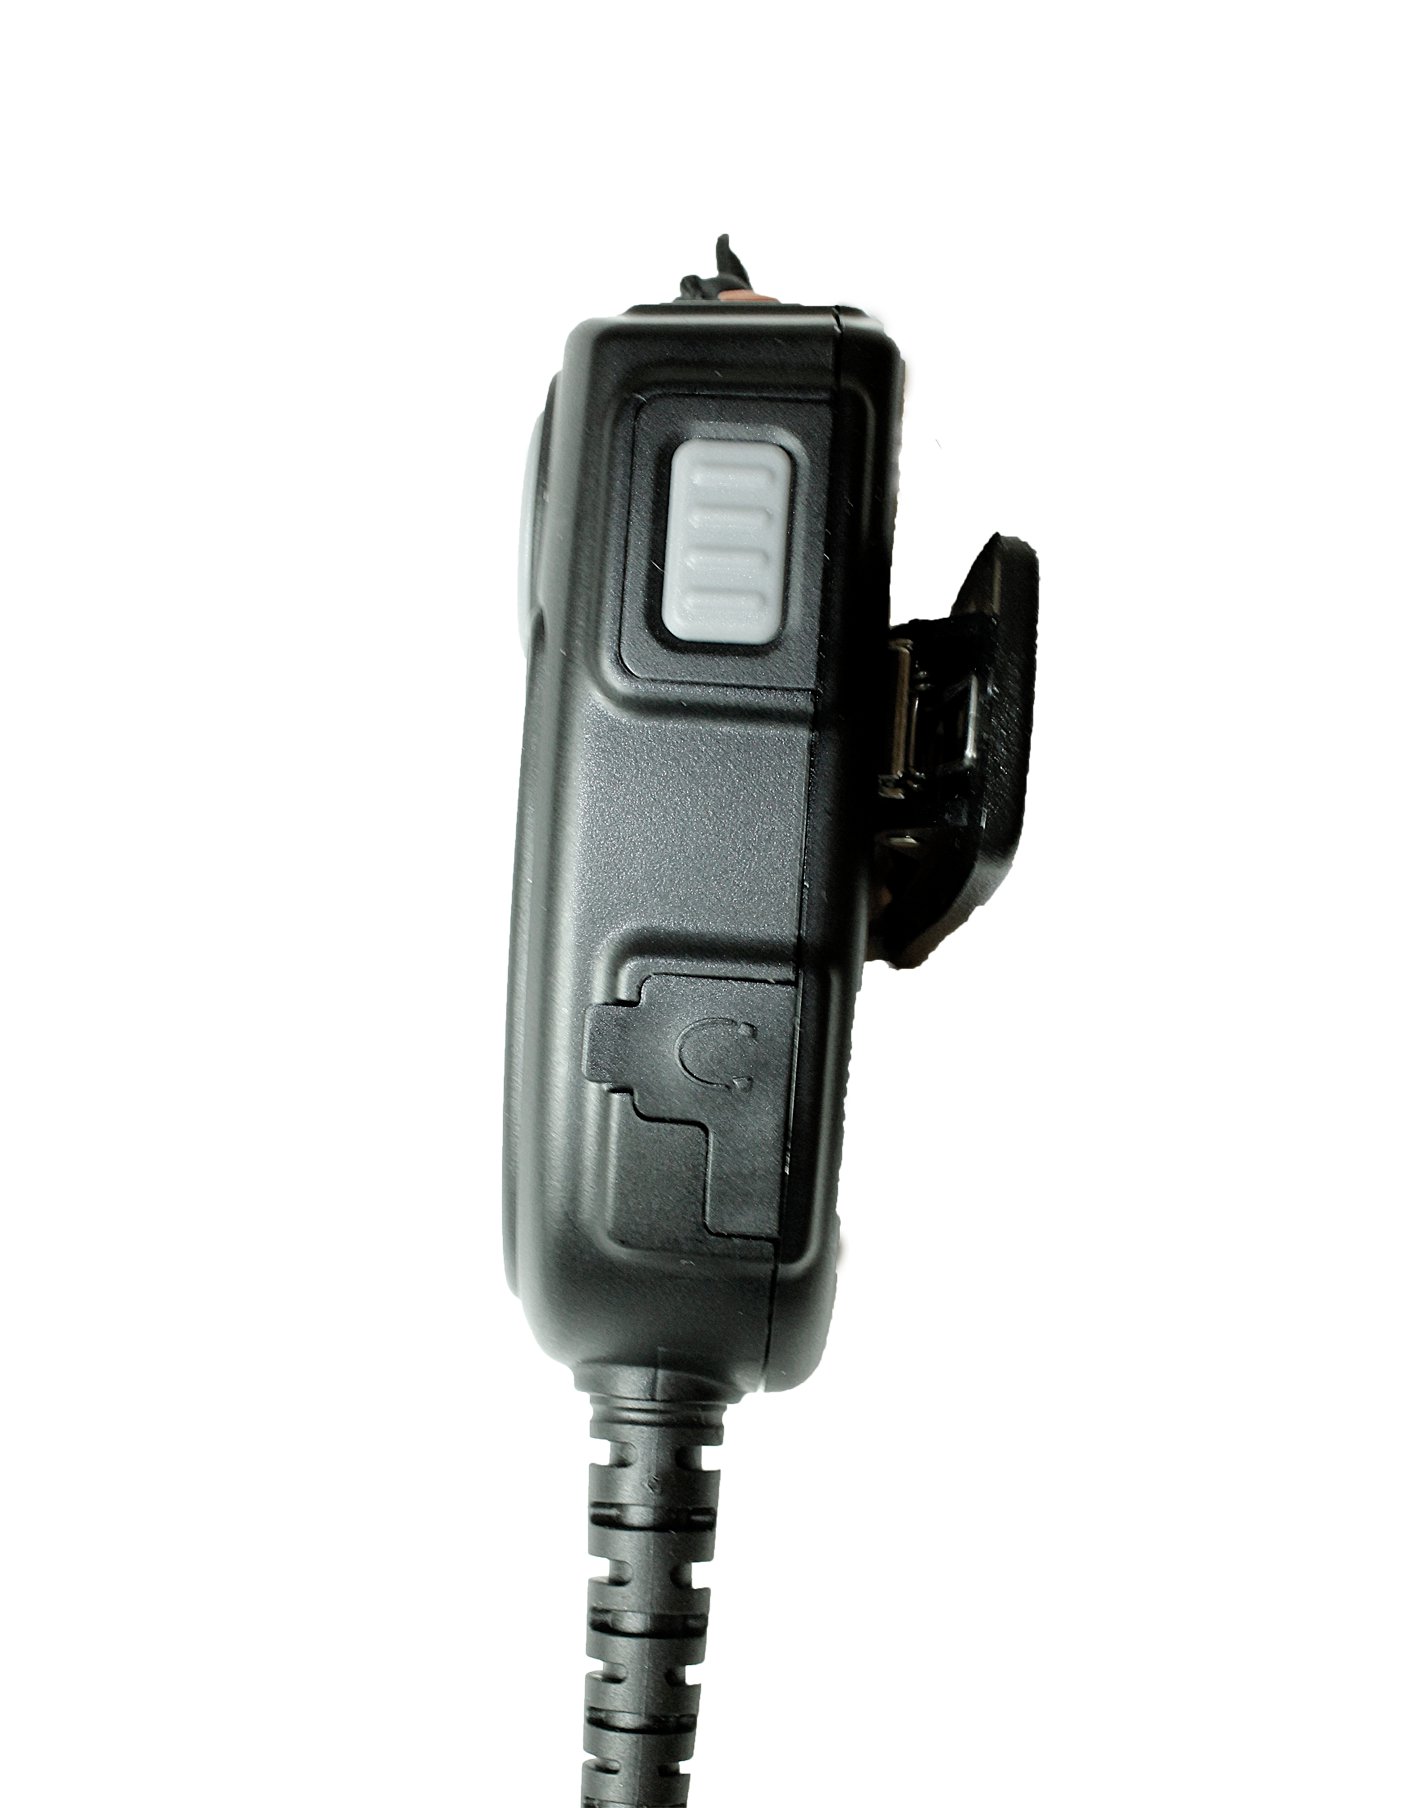 TITAN Lautsprechermikrofon MM20 mit Nexus 01 passend für Sepura STP8000, STP9000, SC20 